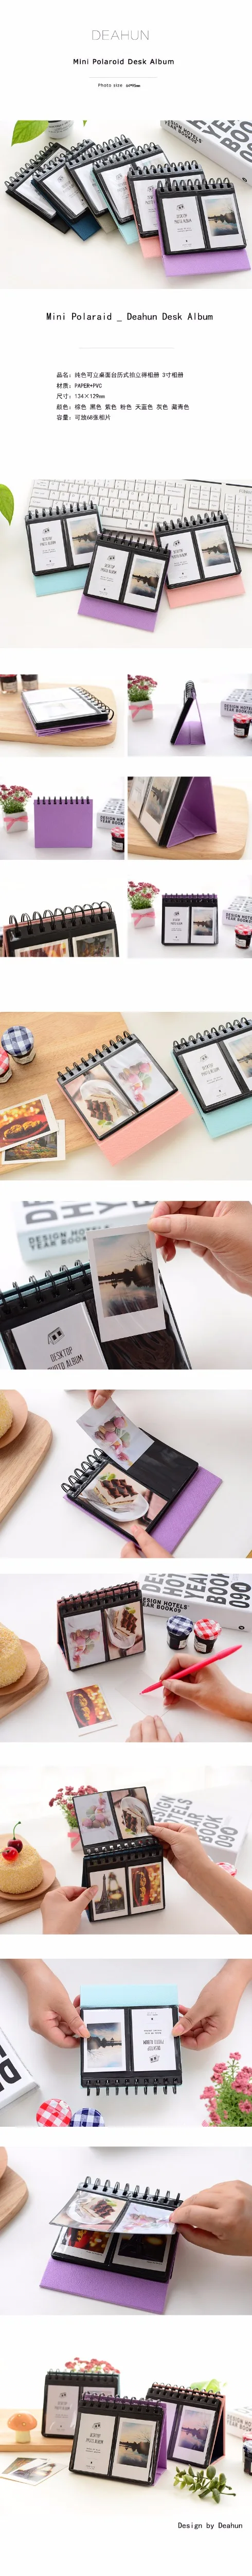 Настольный компьютер стоял Стиль 68 карты мини альбом 3-дюймовая пленка междоузлий Polaroid Фотоальбом креативный Ретро Декорации для альбомов альбом на день рождения